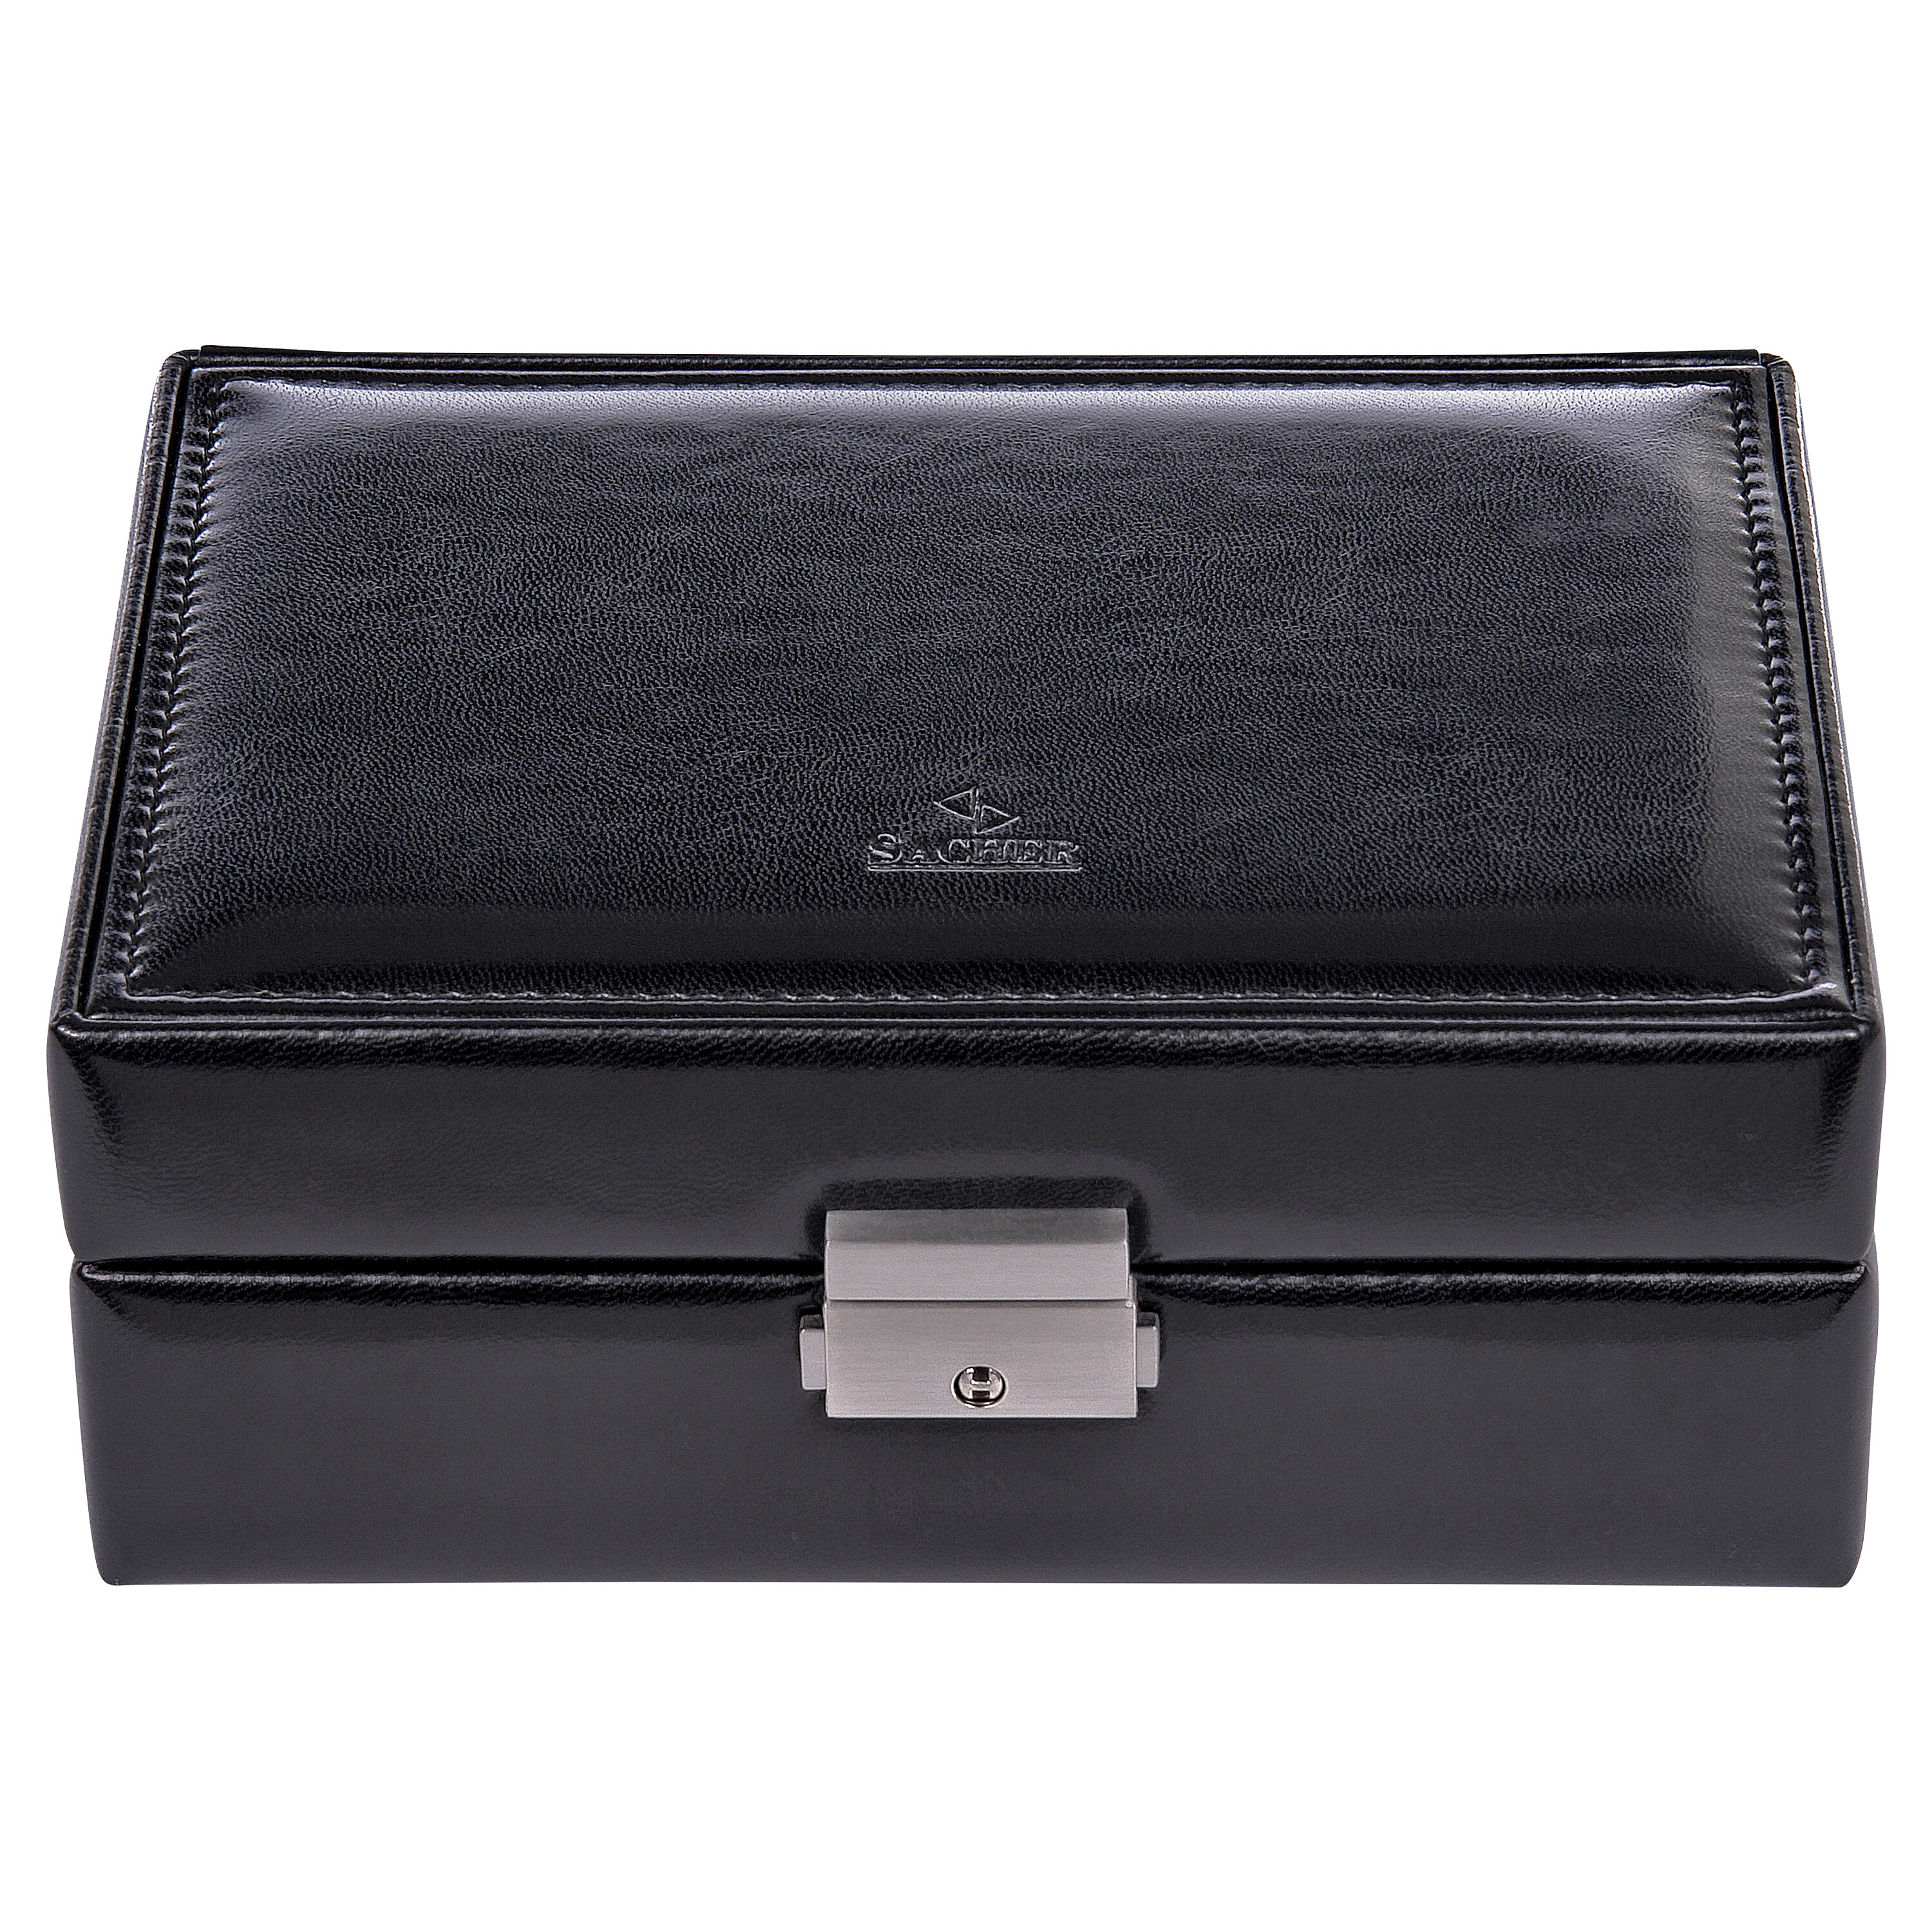 Britta new classic / black jewellery box